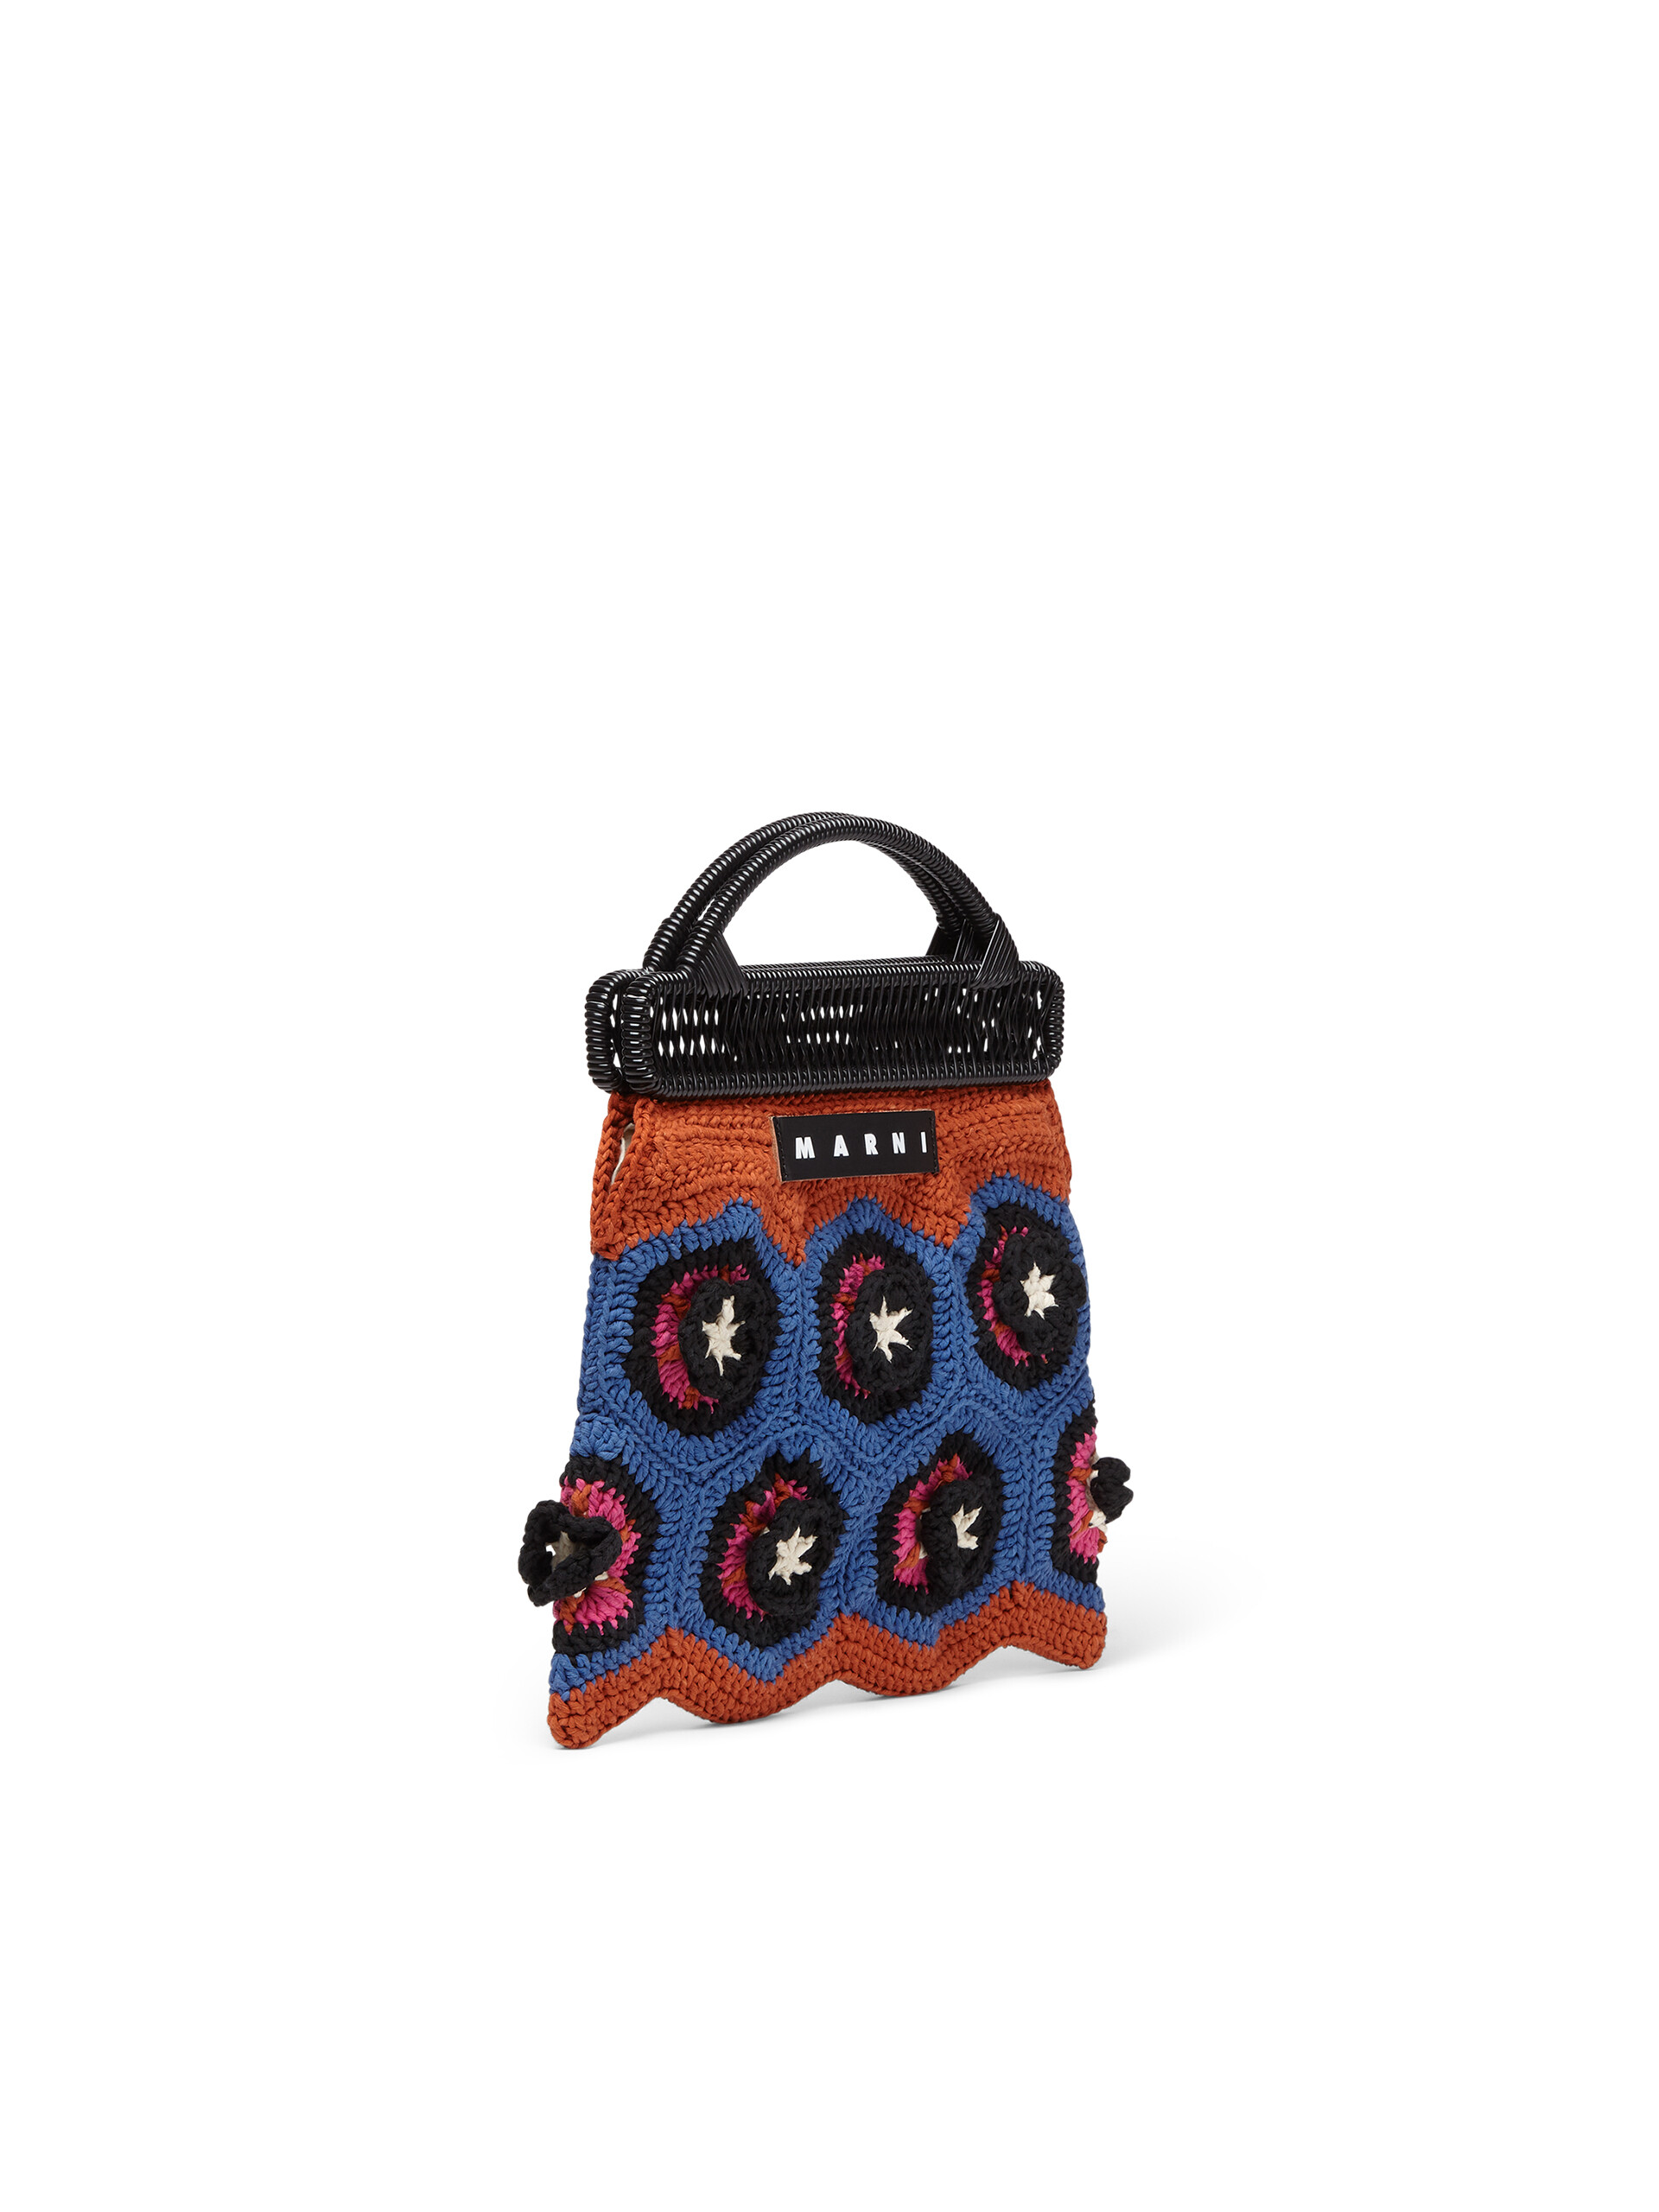 MARNI MARKET CROCHET Häkeltasche aus Baumwolle in Orange und Blau - Taschen - Image 2